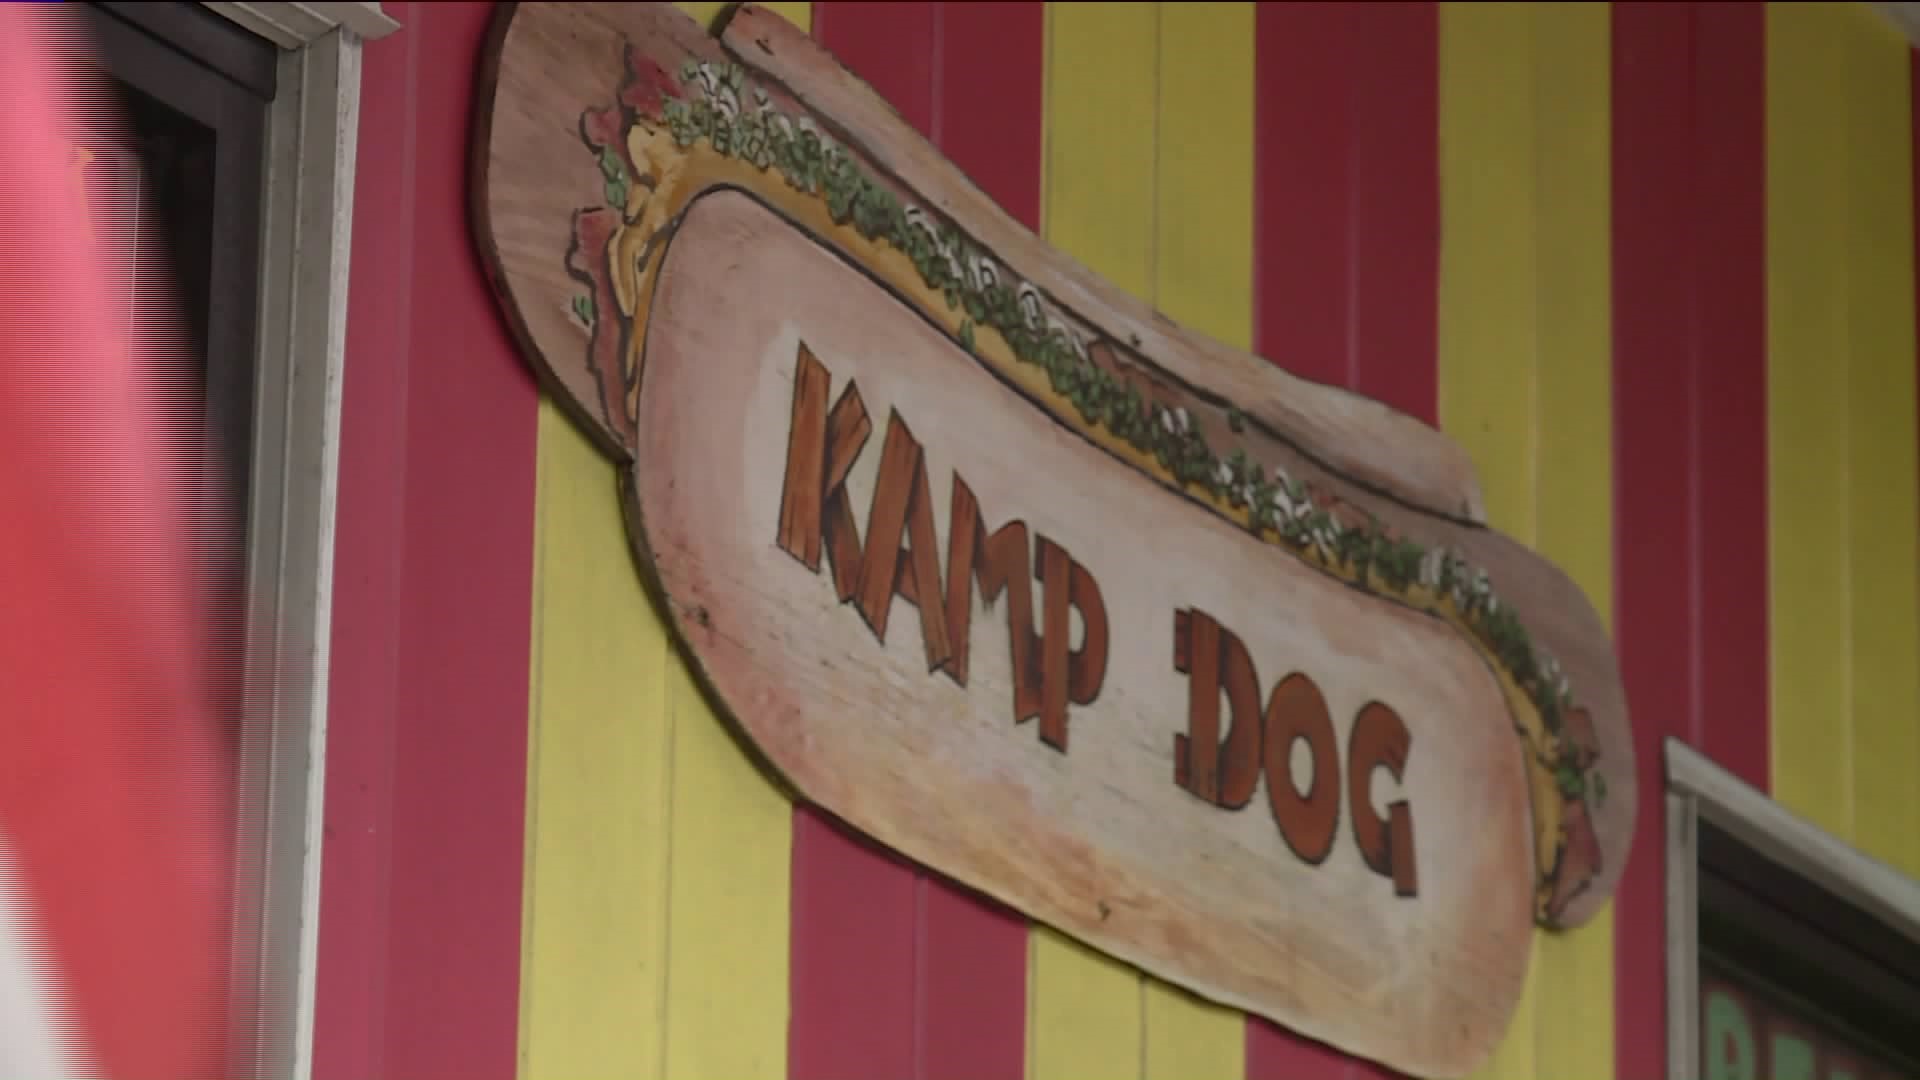 Foodie Friday: Kamp Dog